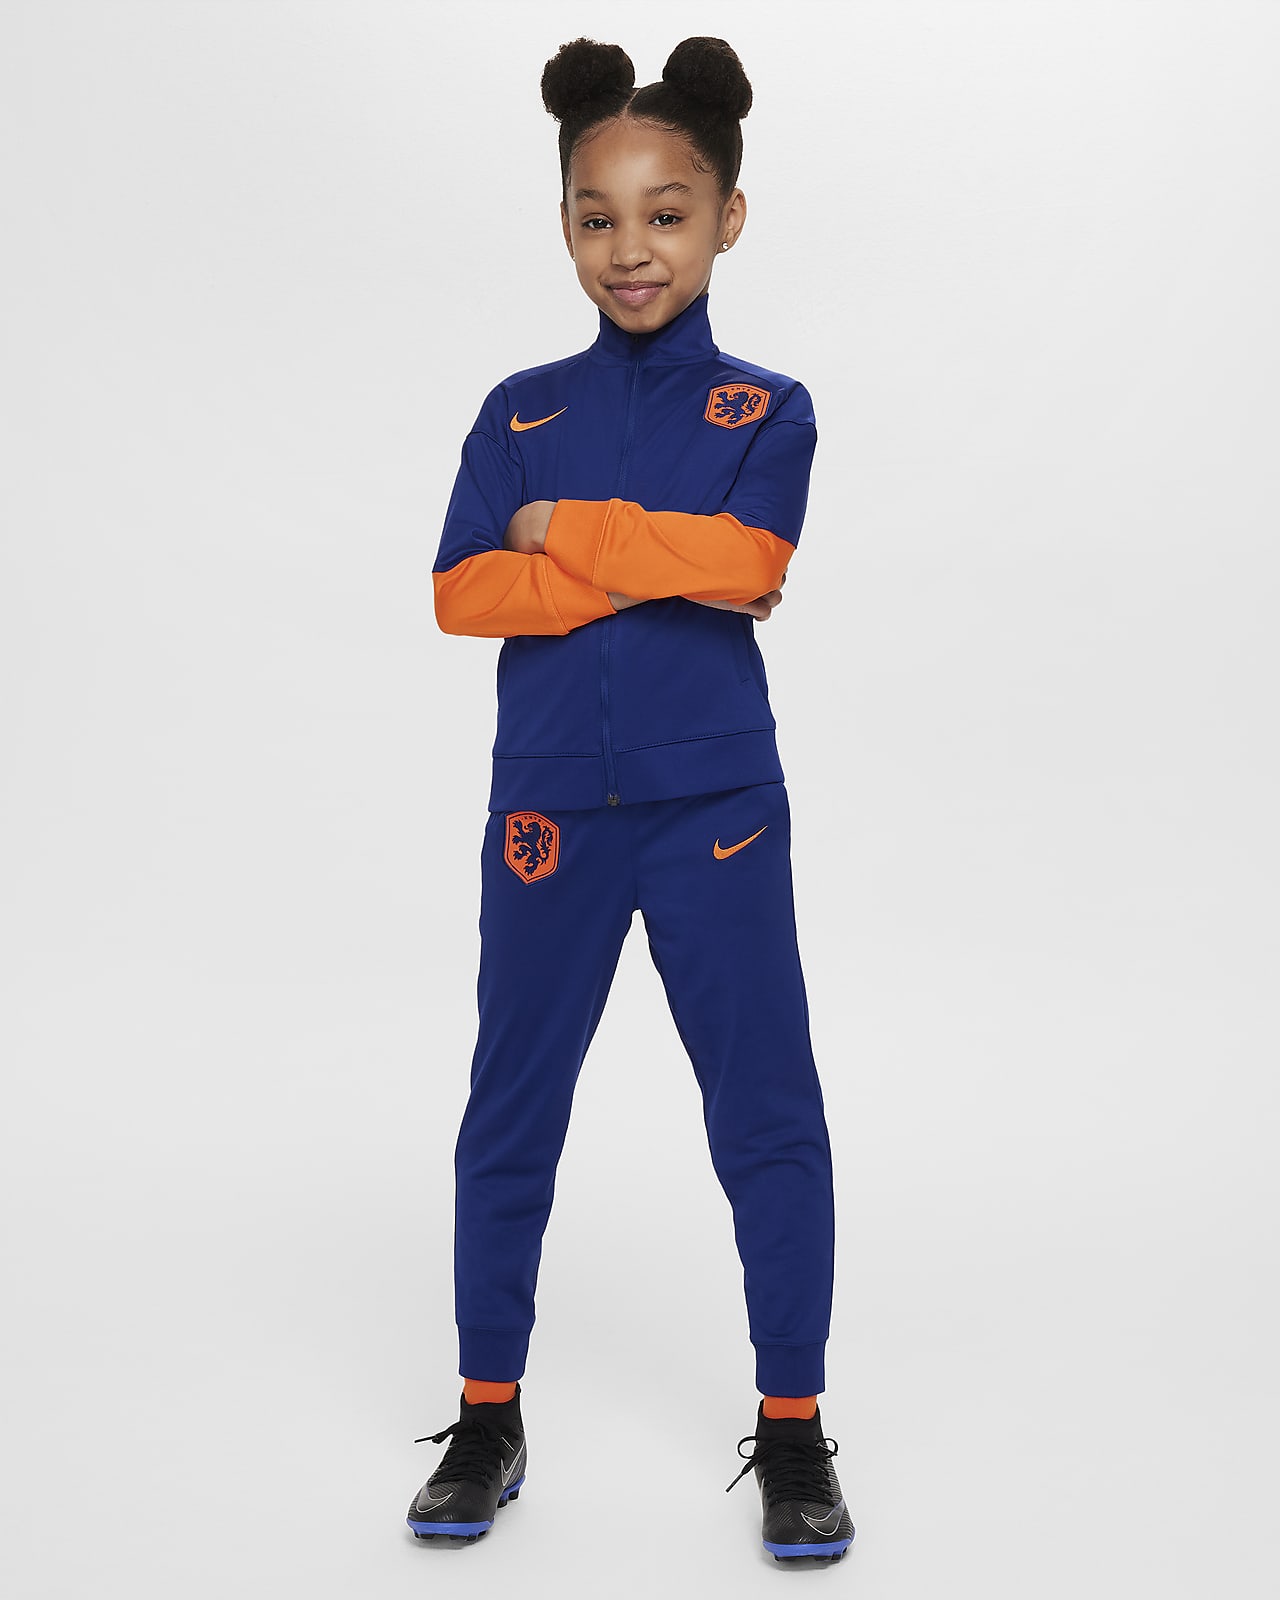 Ποδοσφαιρική πλεκτή φόρμα Nike Dri-FIT Κάτω Χώρες Strike για μικρά παιδιά